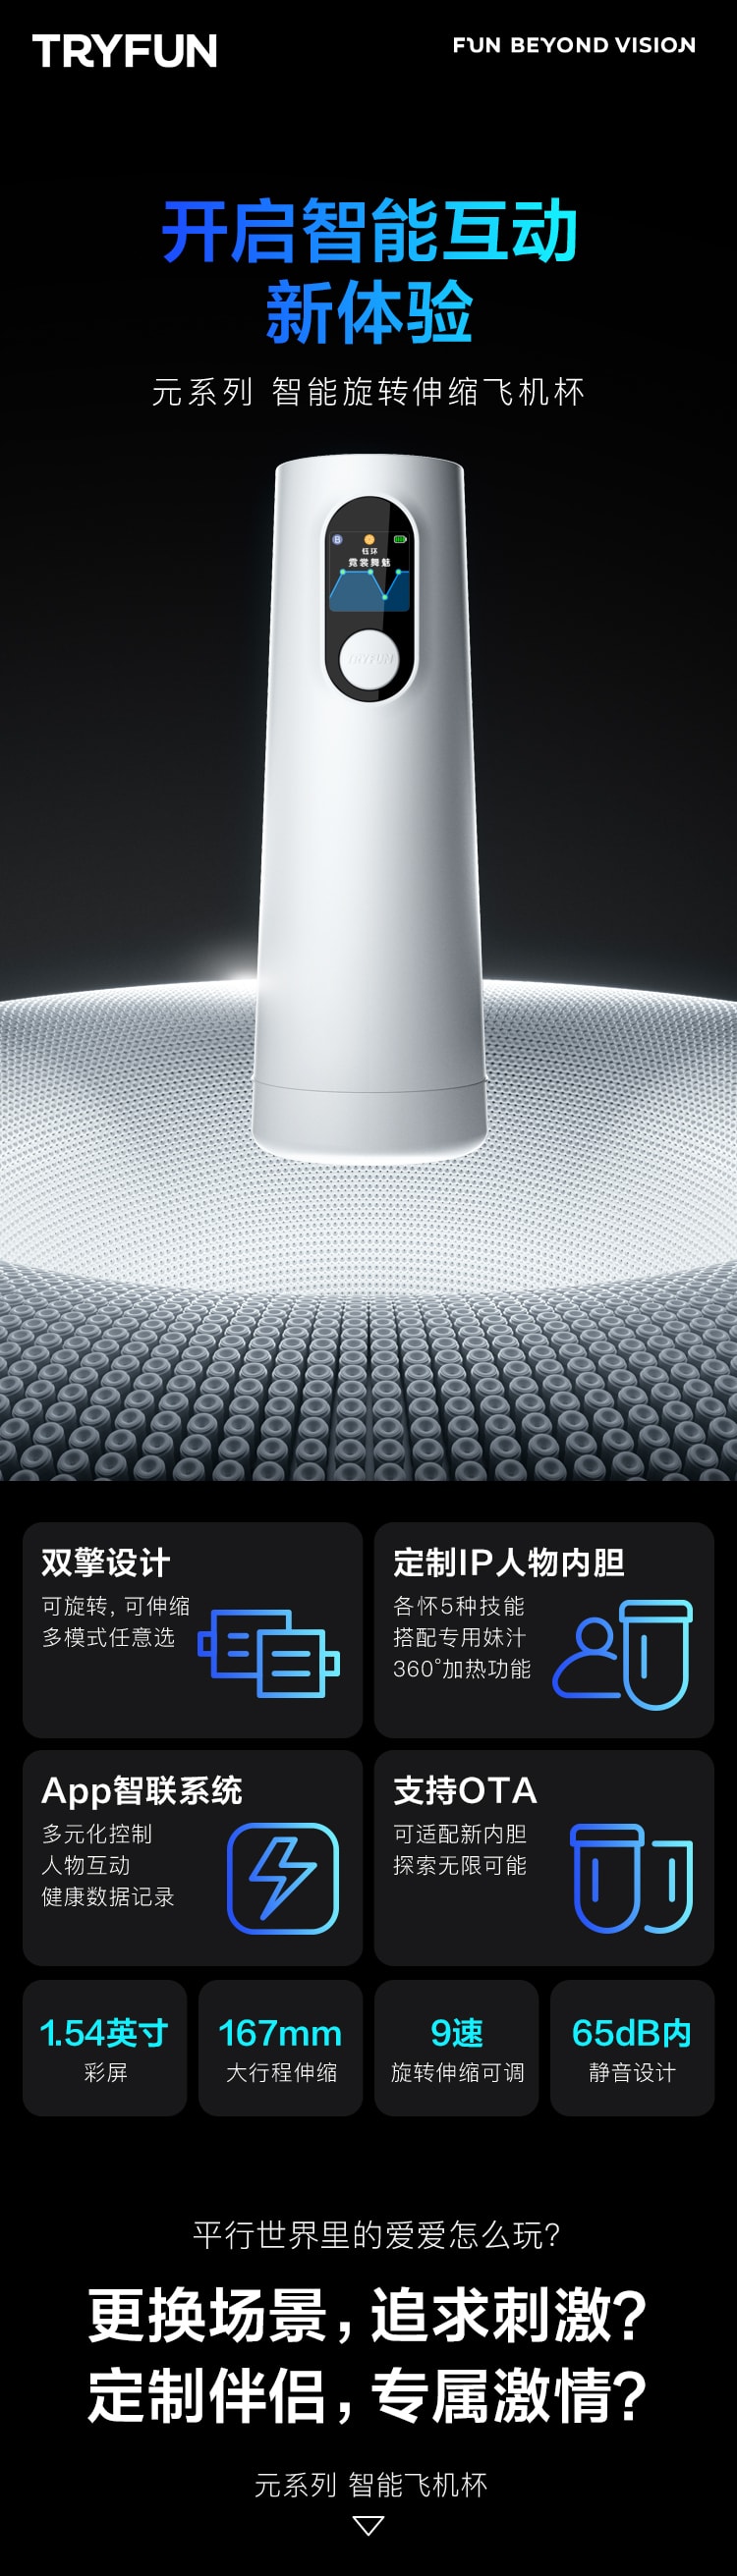 【美國現貨】 中國網易春風元系列智慧飛機杯白色 - 飛機杯+遙遙IP內膽+潤滑液